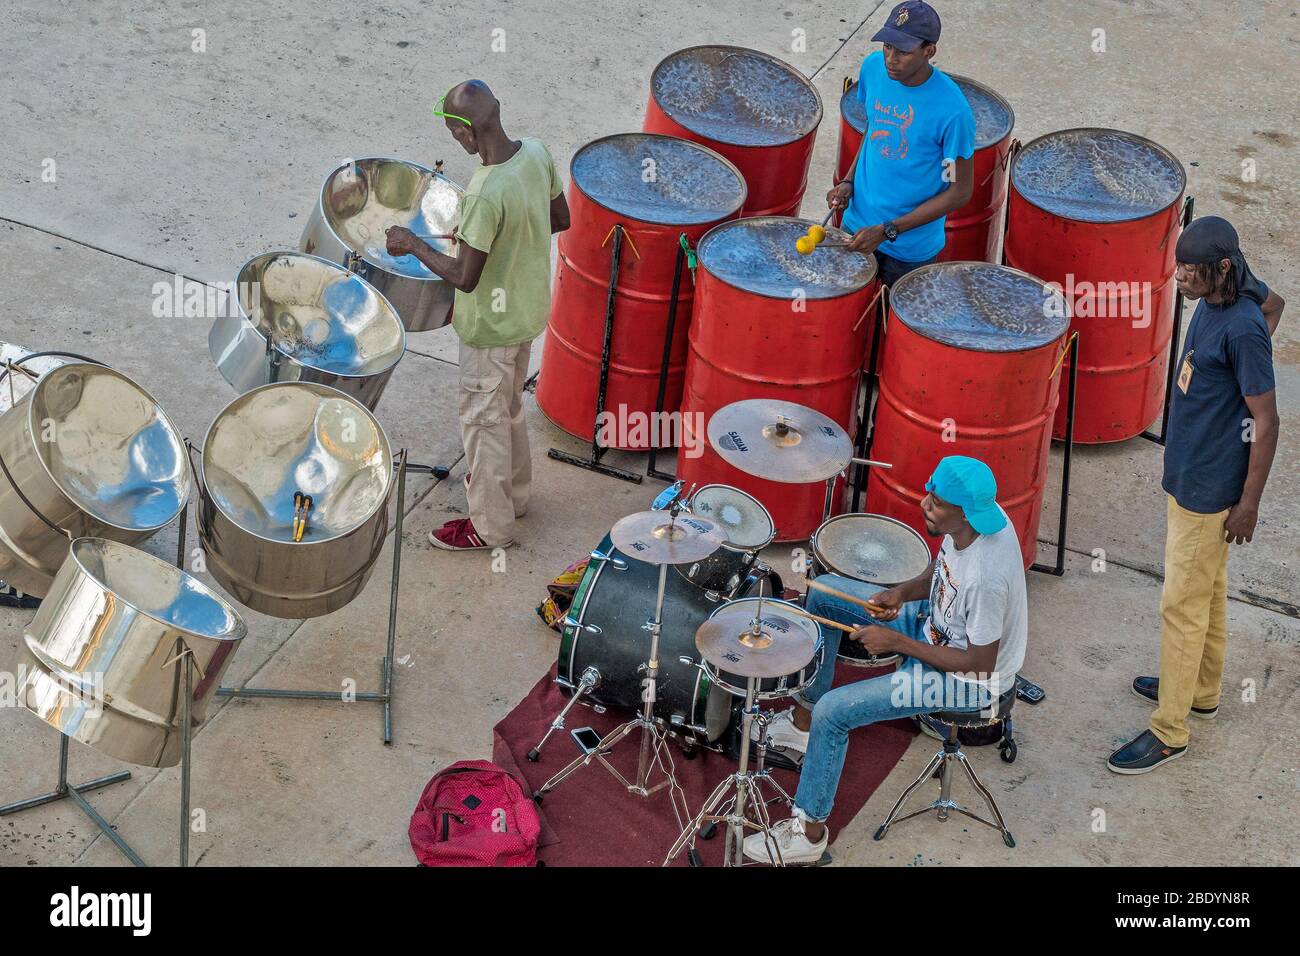 Welcomein Steel Band, Dockside, Antigua, West Indies Foto de stock